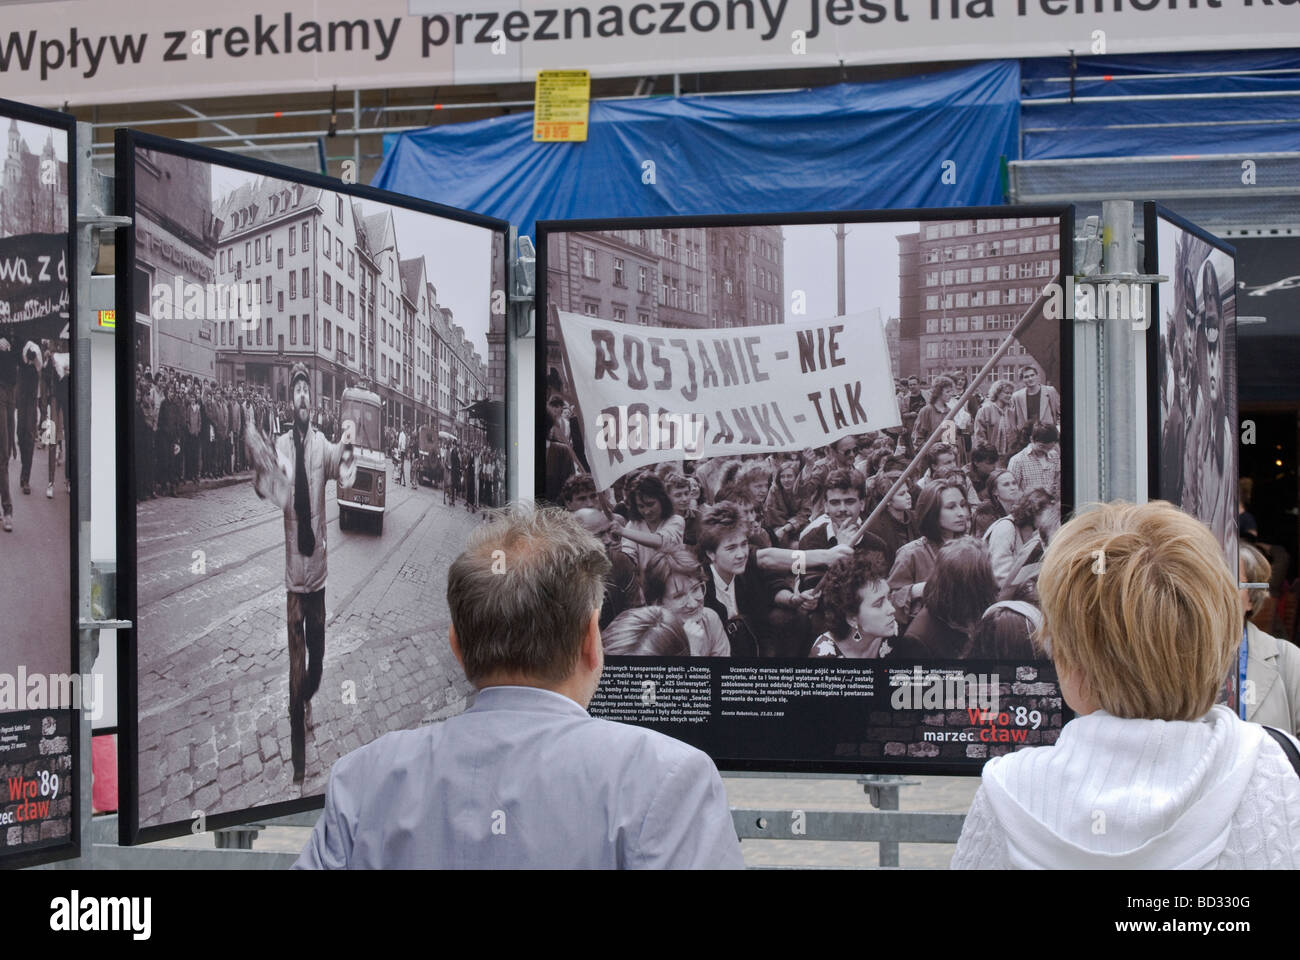 Les hommes russes-NO, les femmes russes-Oui, démonstration de Wrocław Juin 1989 effondrement du communisme, affiche Juin 2009 à Wrocław Pologne Banque D'Images